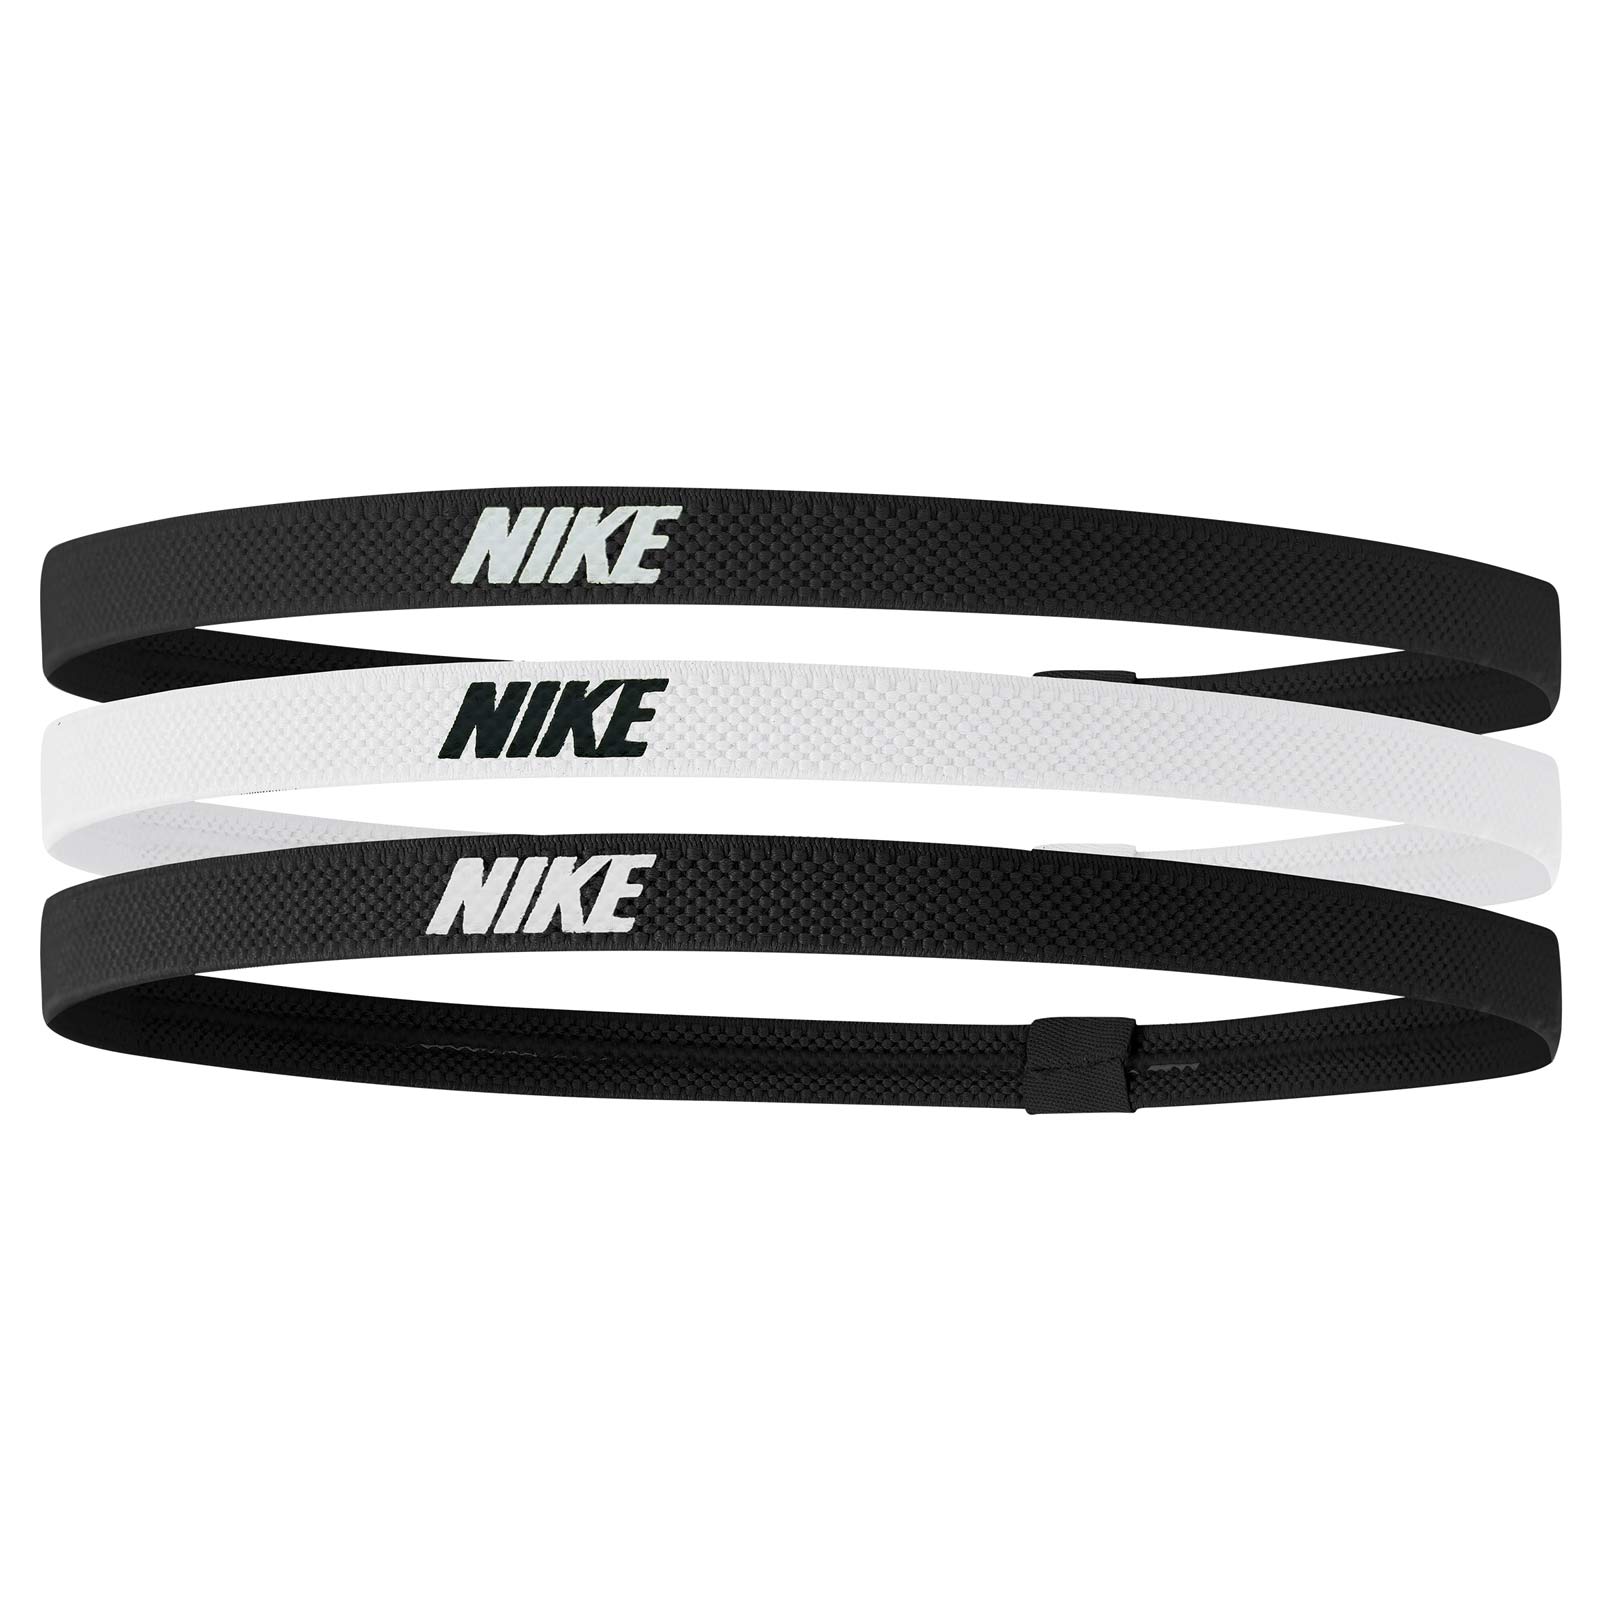 Nike Headbands 2.0 Multi Colour 3Pk